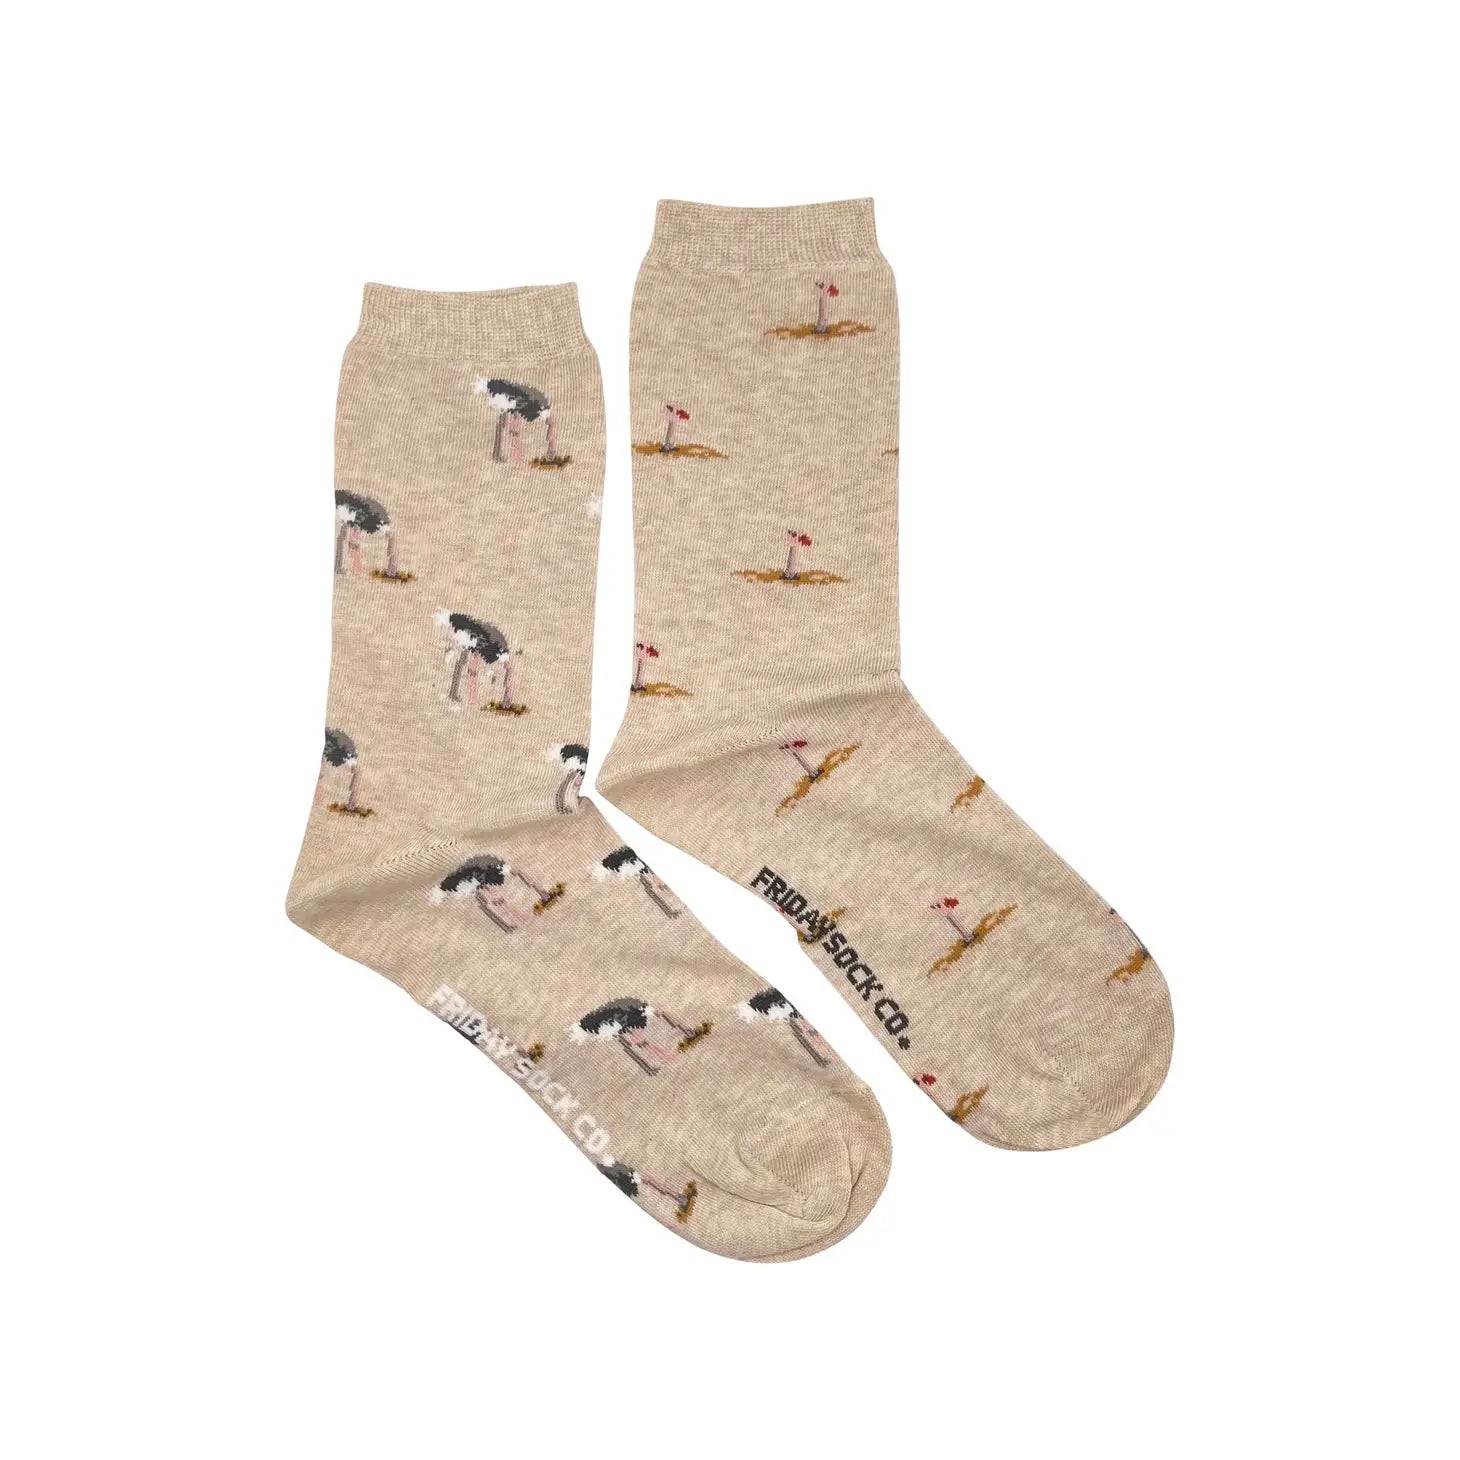 Friday Sock Co. - Women's Socks Ostrich